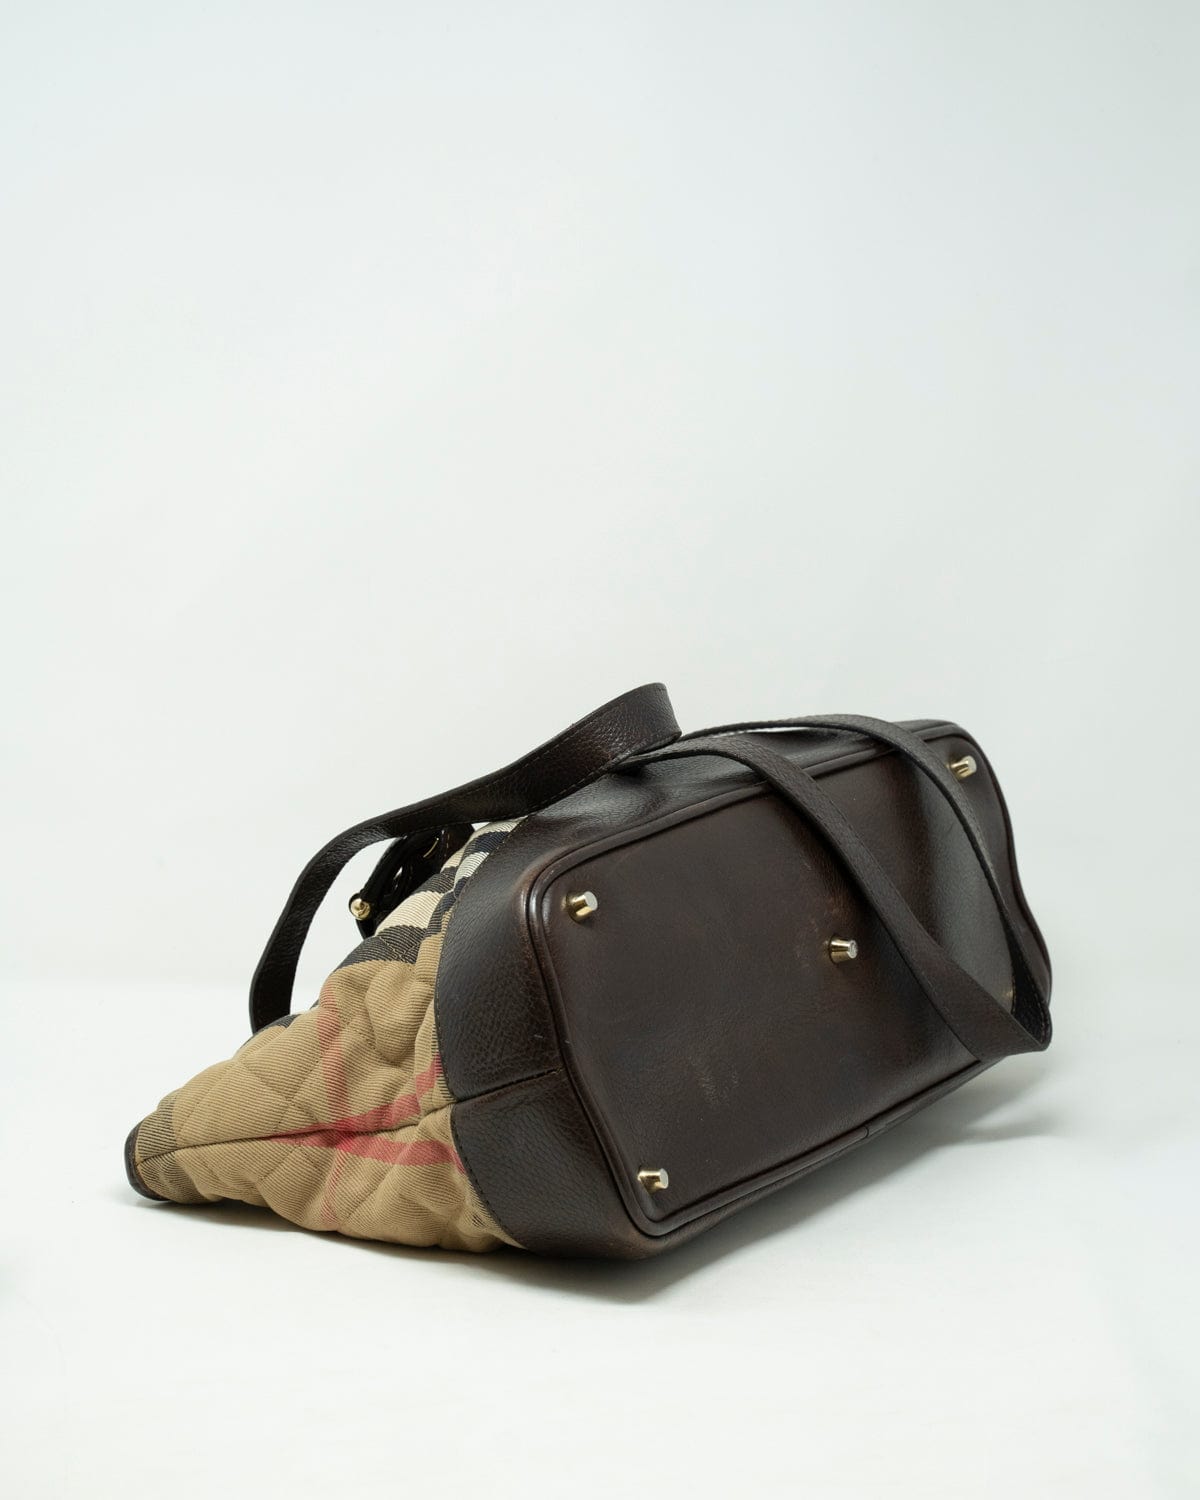 Burberry Burberry Nova Check Canvas and leather shoulder bag